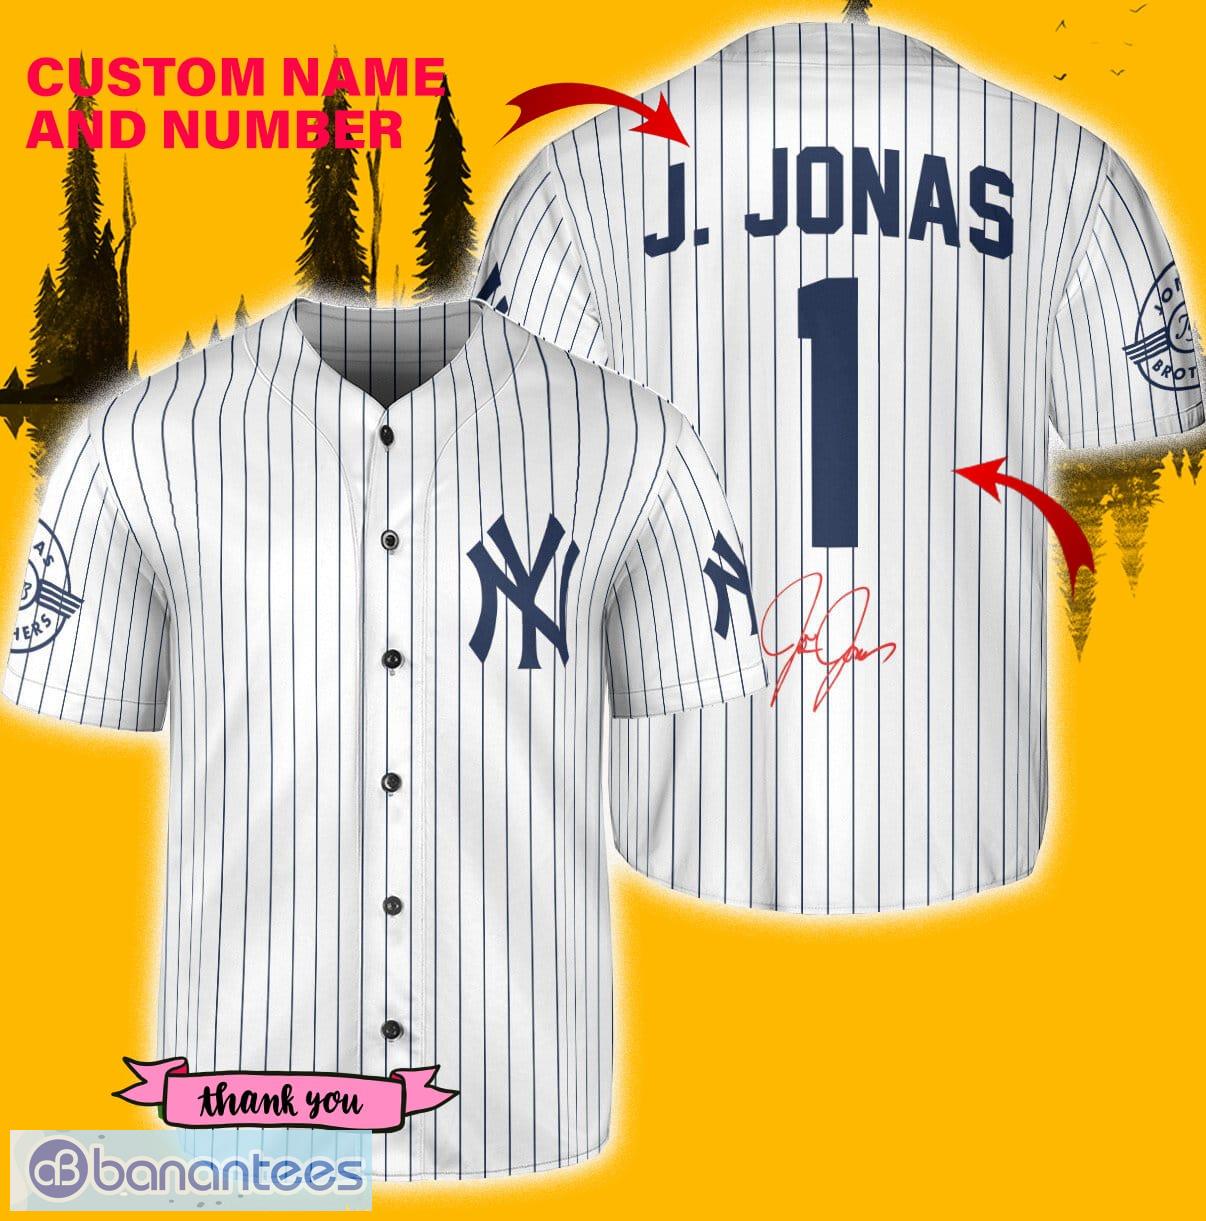 NY Yankees J. Jonas Jersey - White